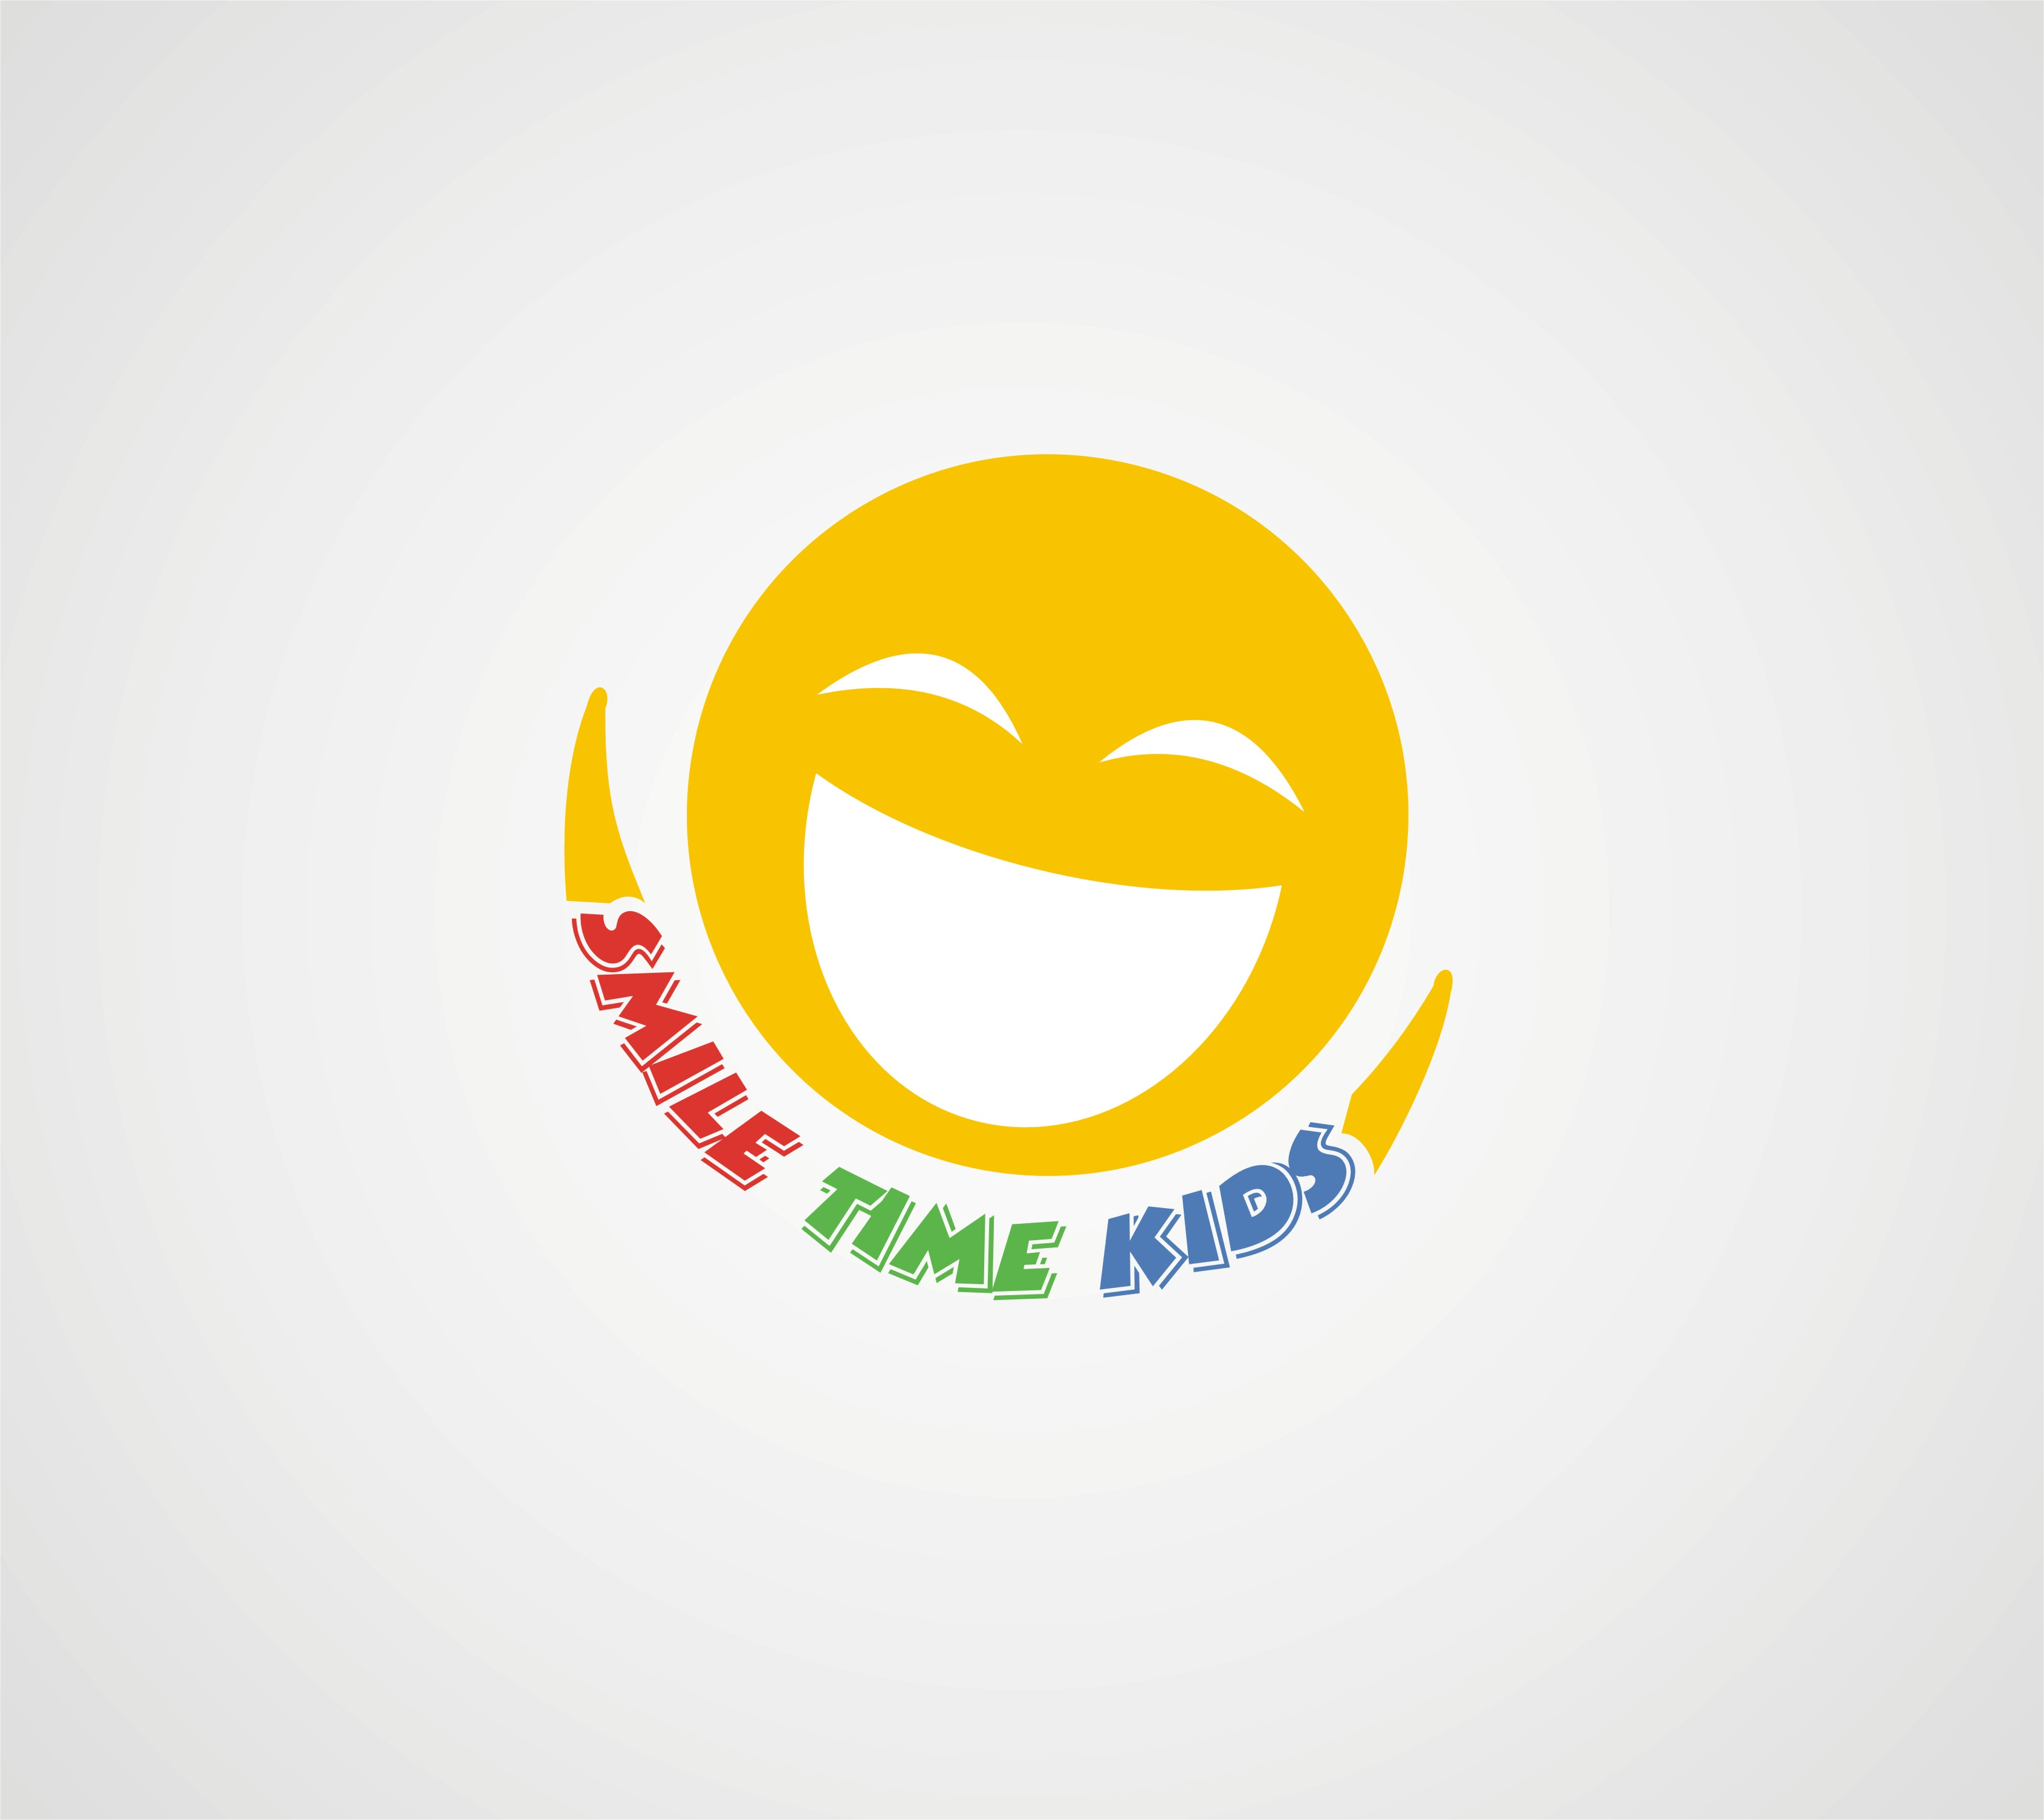 Fun Logo - Logo Design Contests » Fun Logo Design for Smile Time Kids » Design ...